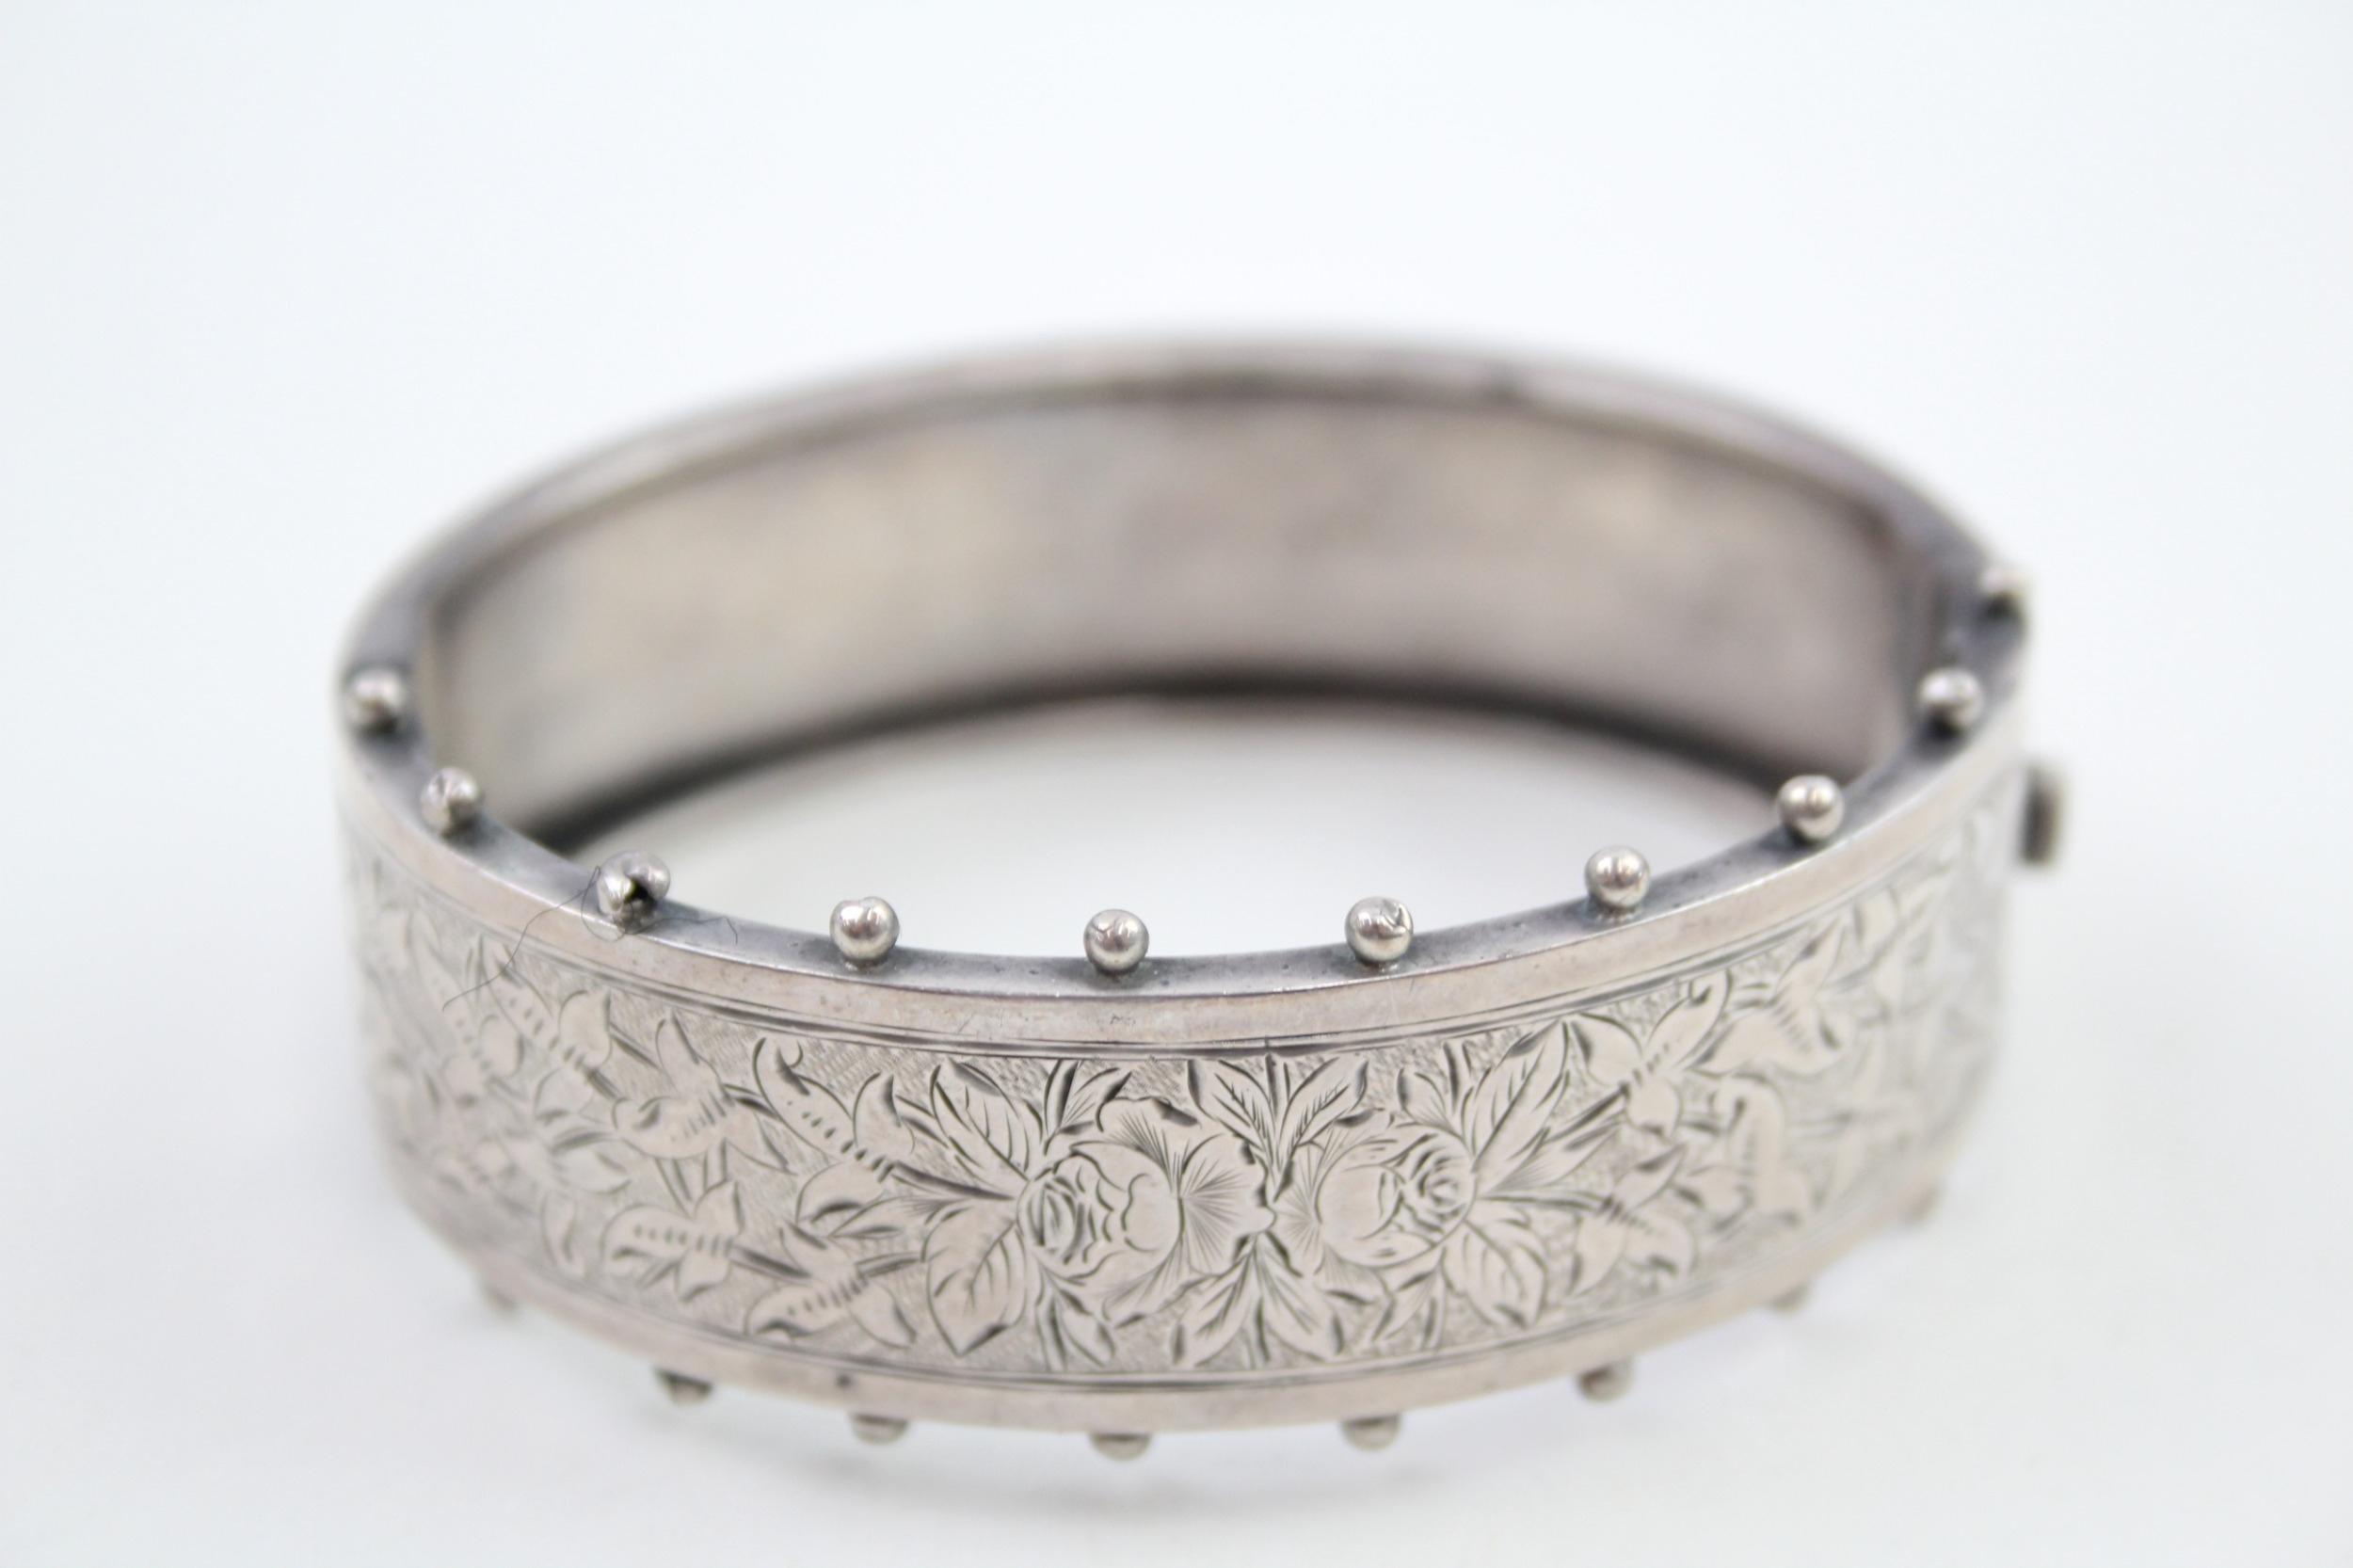 A decorative Victorian silver bangle (26g)